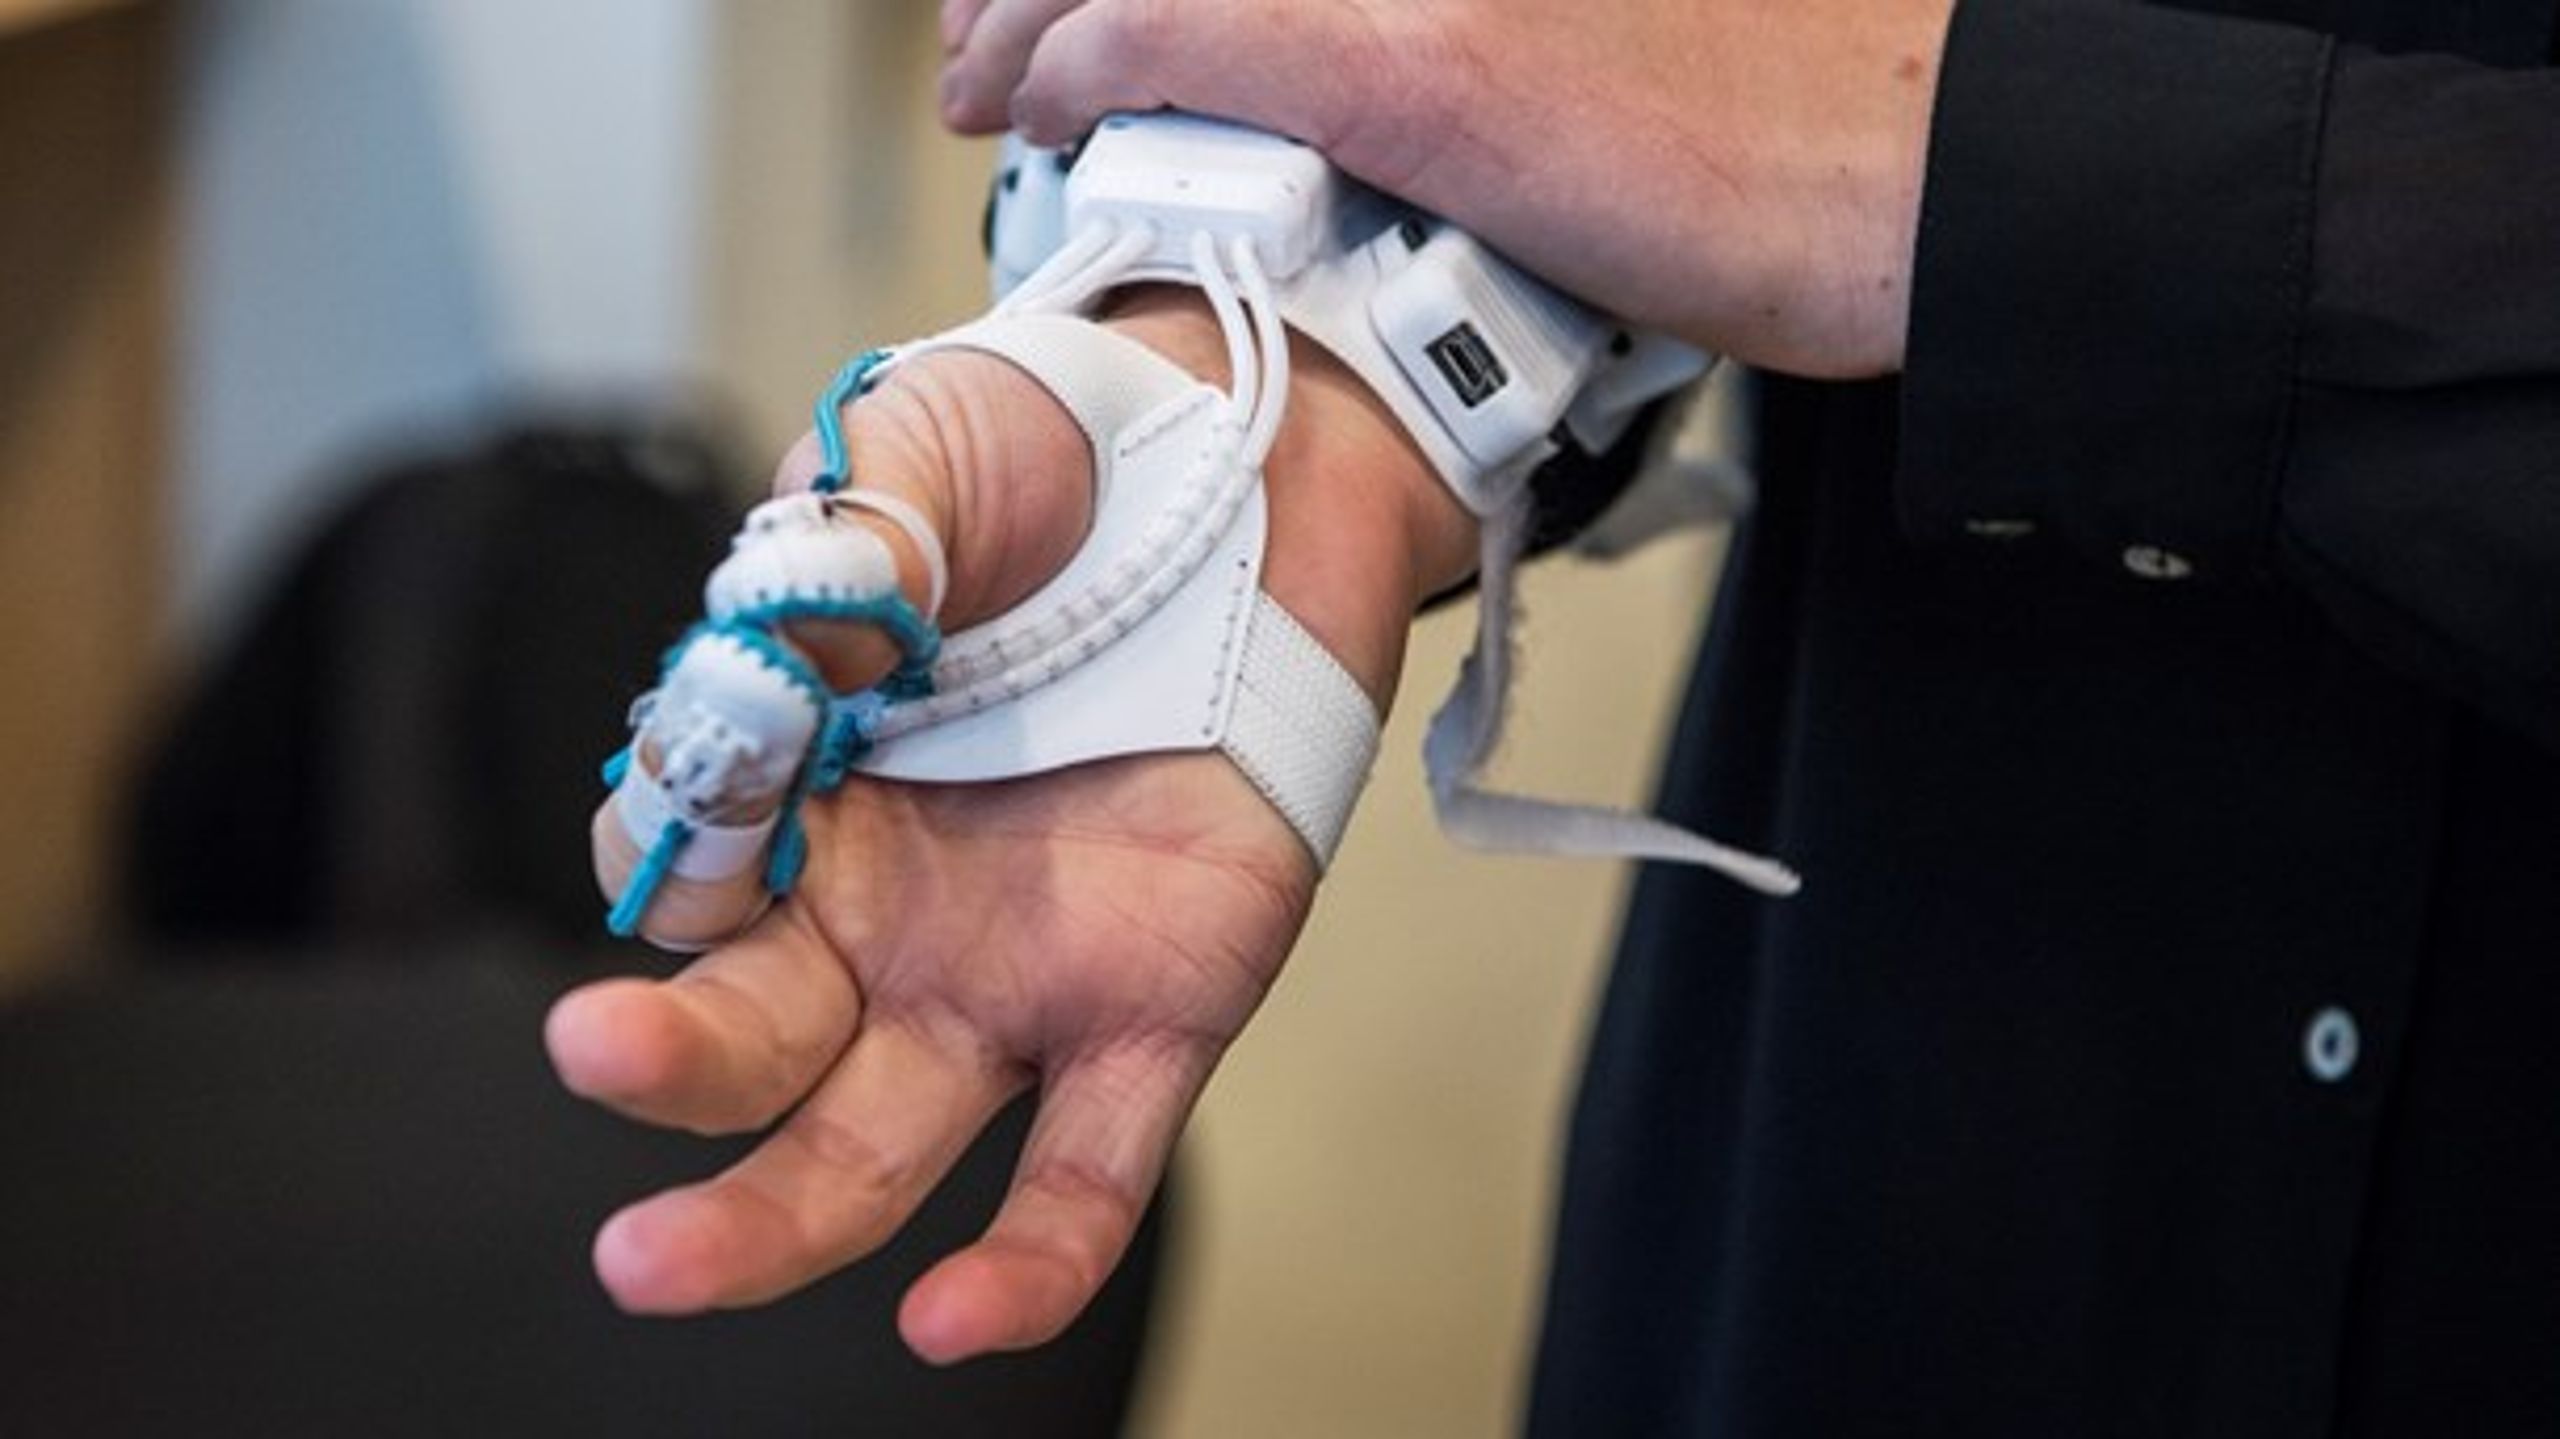 Odense&nbsp;Robotics. Robothånd til mennesker, som mangler en eller flere fingre. Forskningsalliancen nævner blandt andet robotvirksomheder på Fyn som et eksempel på succesfulde forskningsvirksomheder.